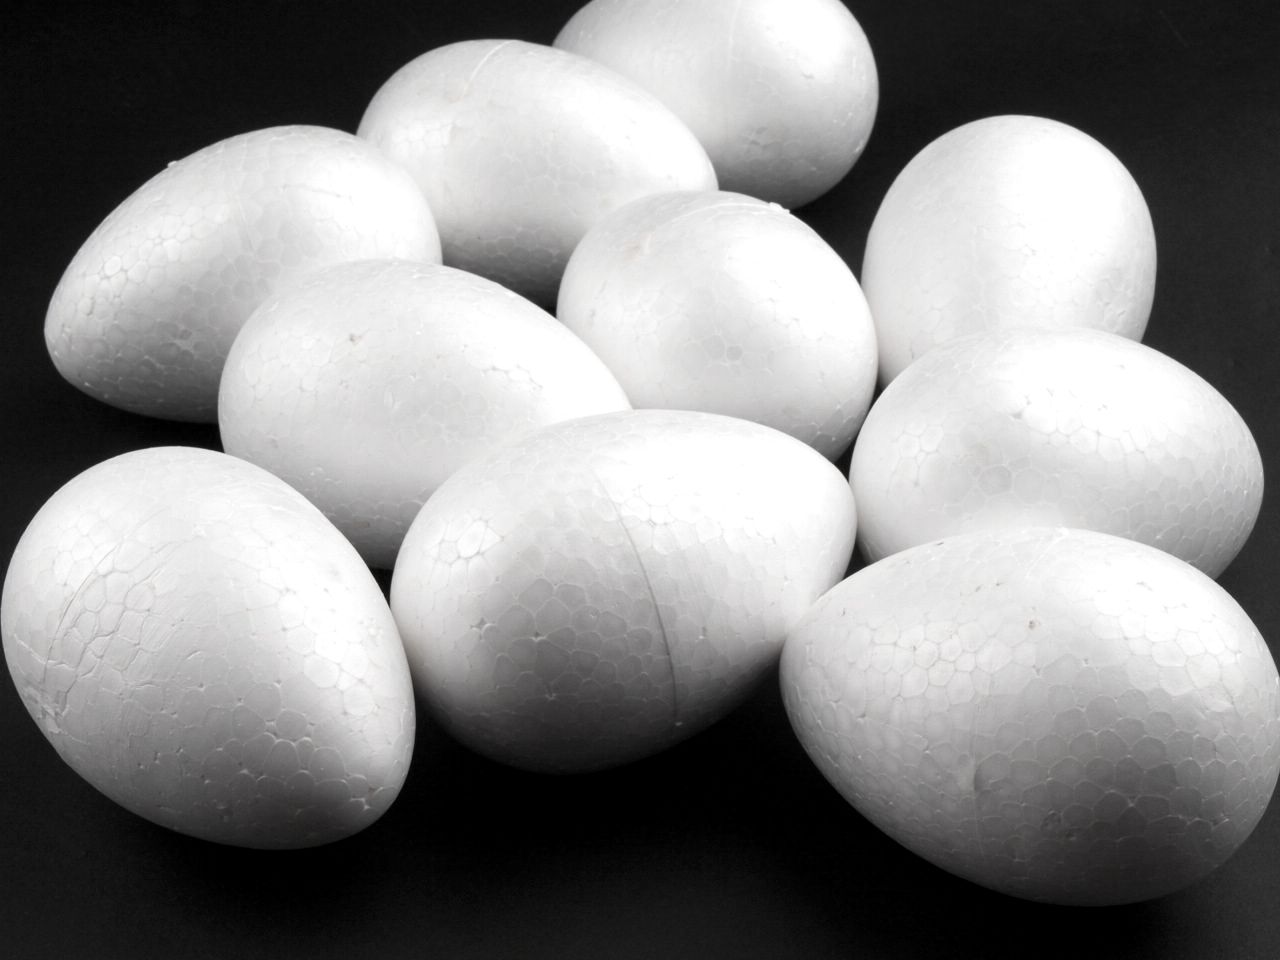 Яйце от стиропор - изберете размер